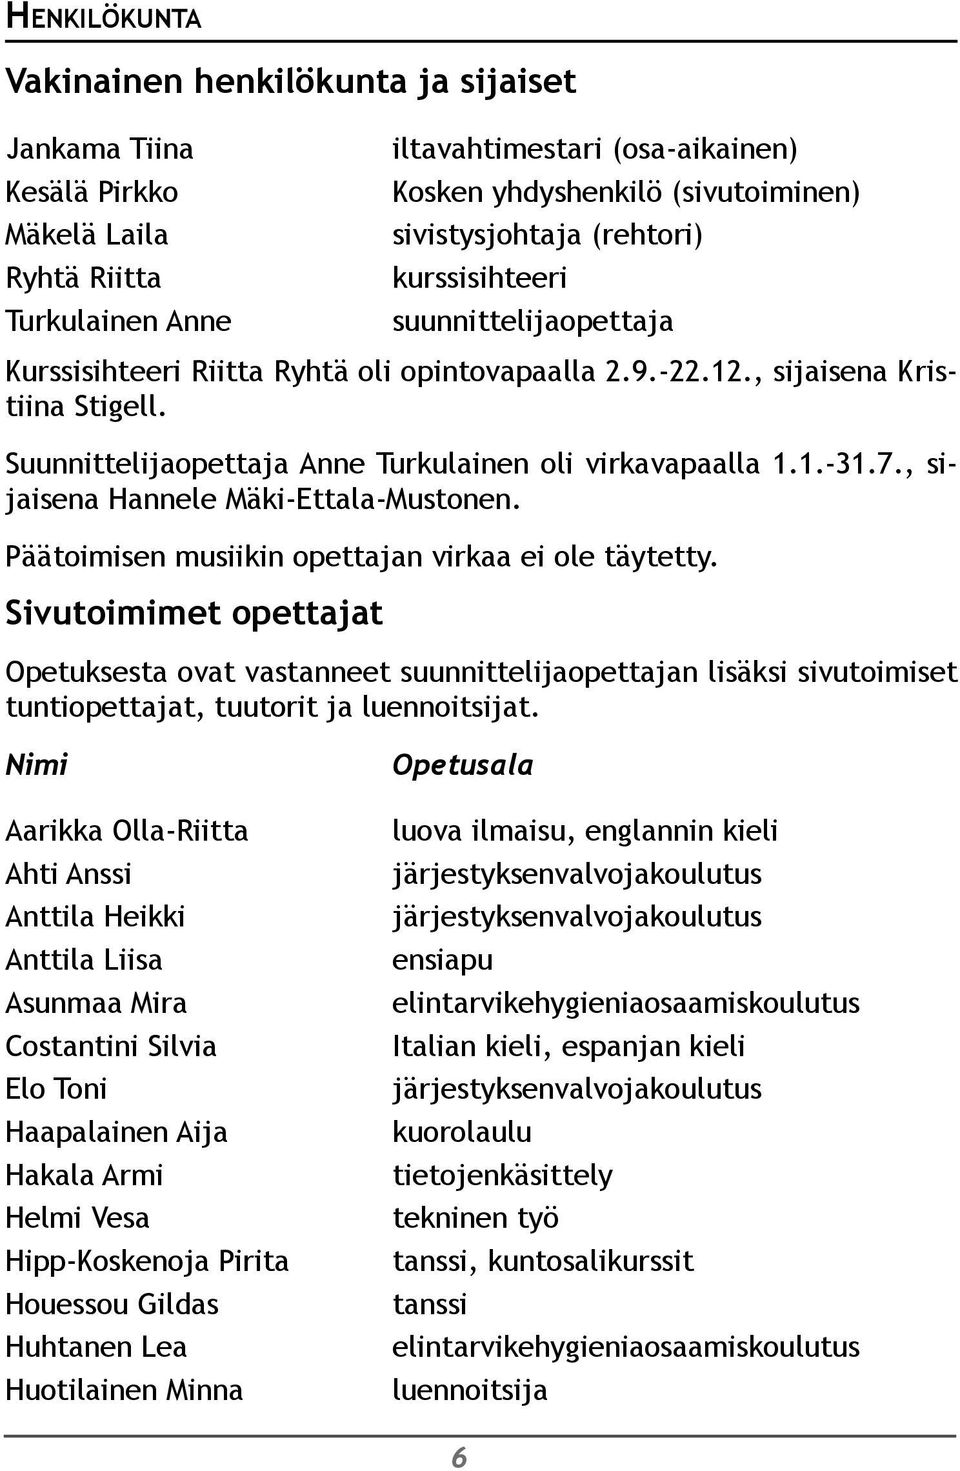 Suunnittelijaopettaja Anne Turkulainen oli virkavapaalla 1.1.-31.7., sijaisena Hannele Mäki-Ettala-Mustonen. Päätoimisen musiikin opettajan virkaa ei ole täytetty.